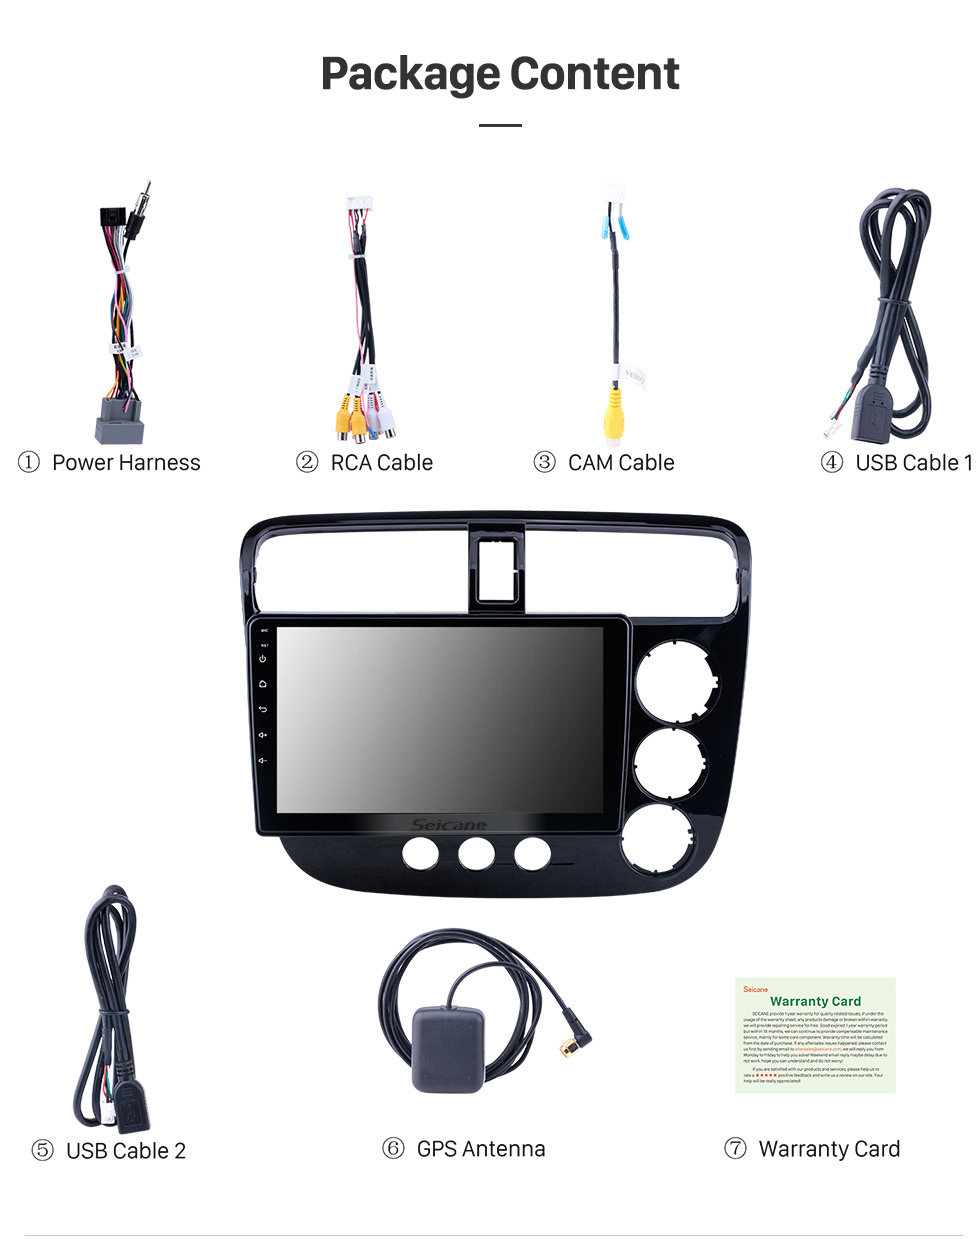 Seicane OEM 9 pouces Android 10.0 pour 2001-2005 Honda Civic RHD Radio A / C manuelle avec Bluetooth HD à écran tactile Système de navigation GPS compatible Carplay DAB +